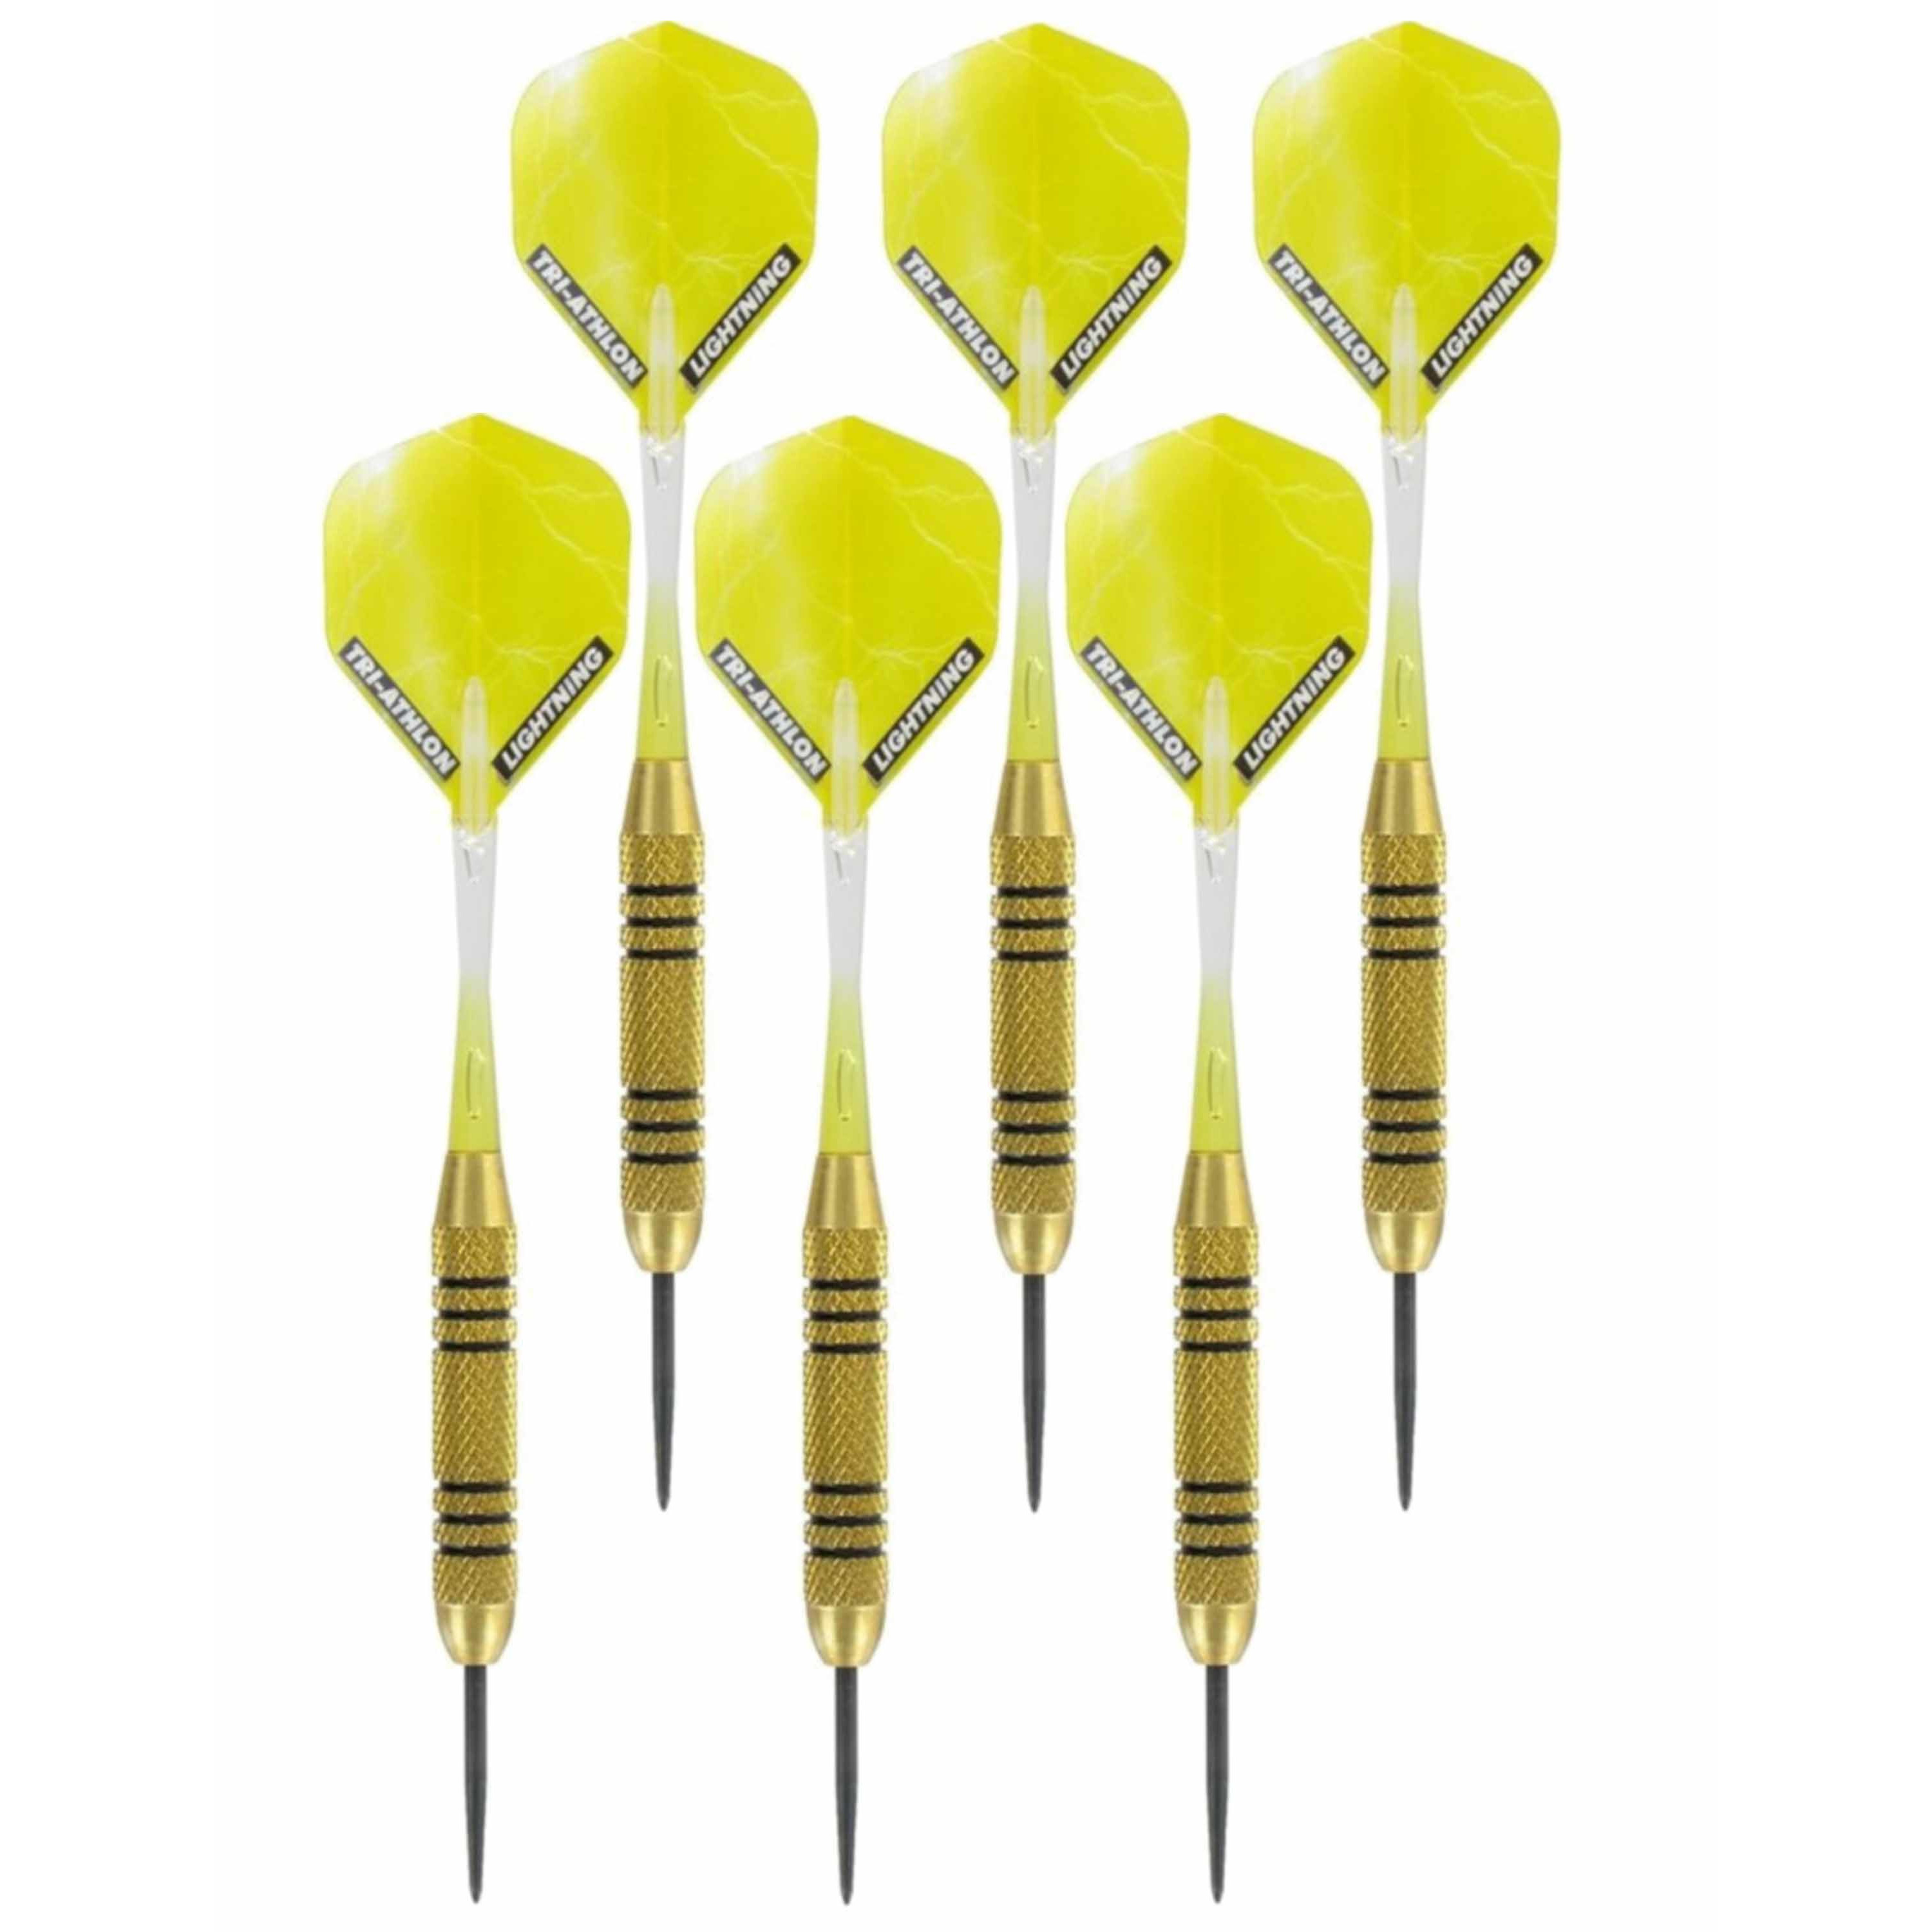 3x Set van dartpijltjes Speedy Yellow Brass met Metallic Lightning flites 23 grams